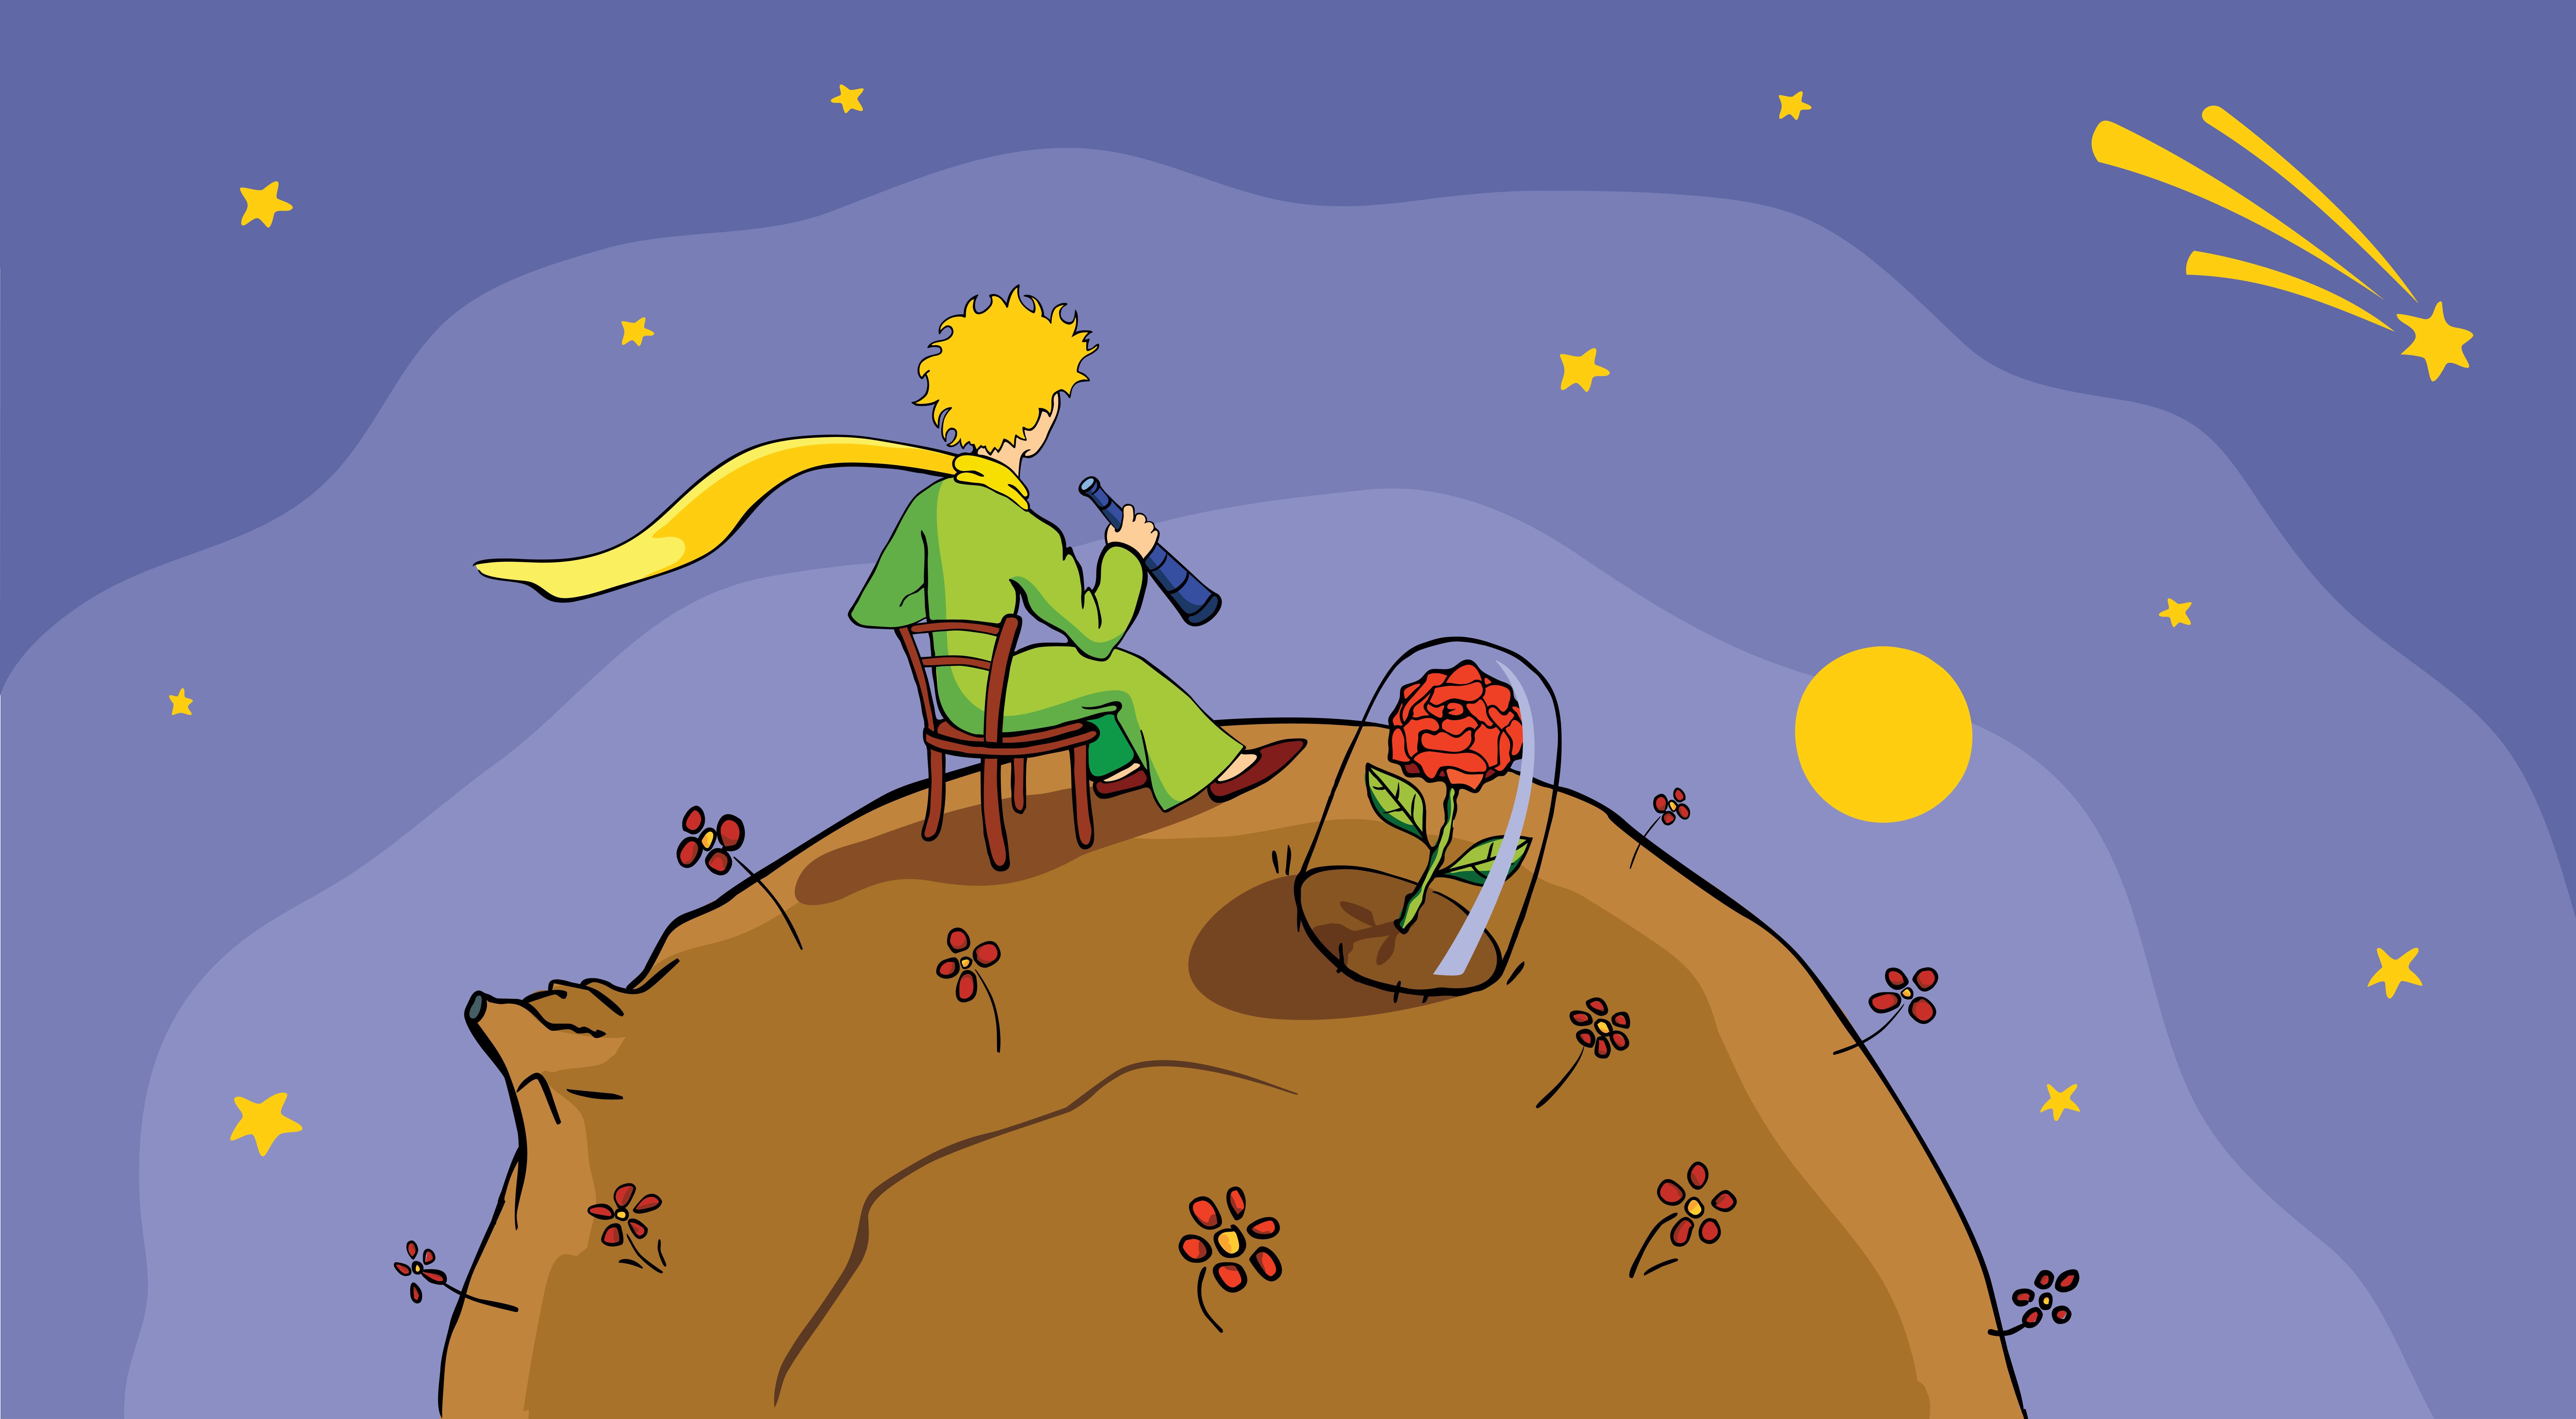 A kis herceg ül a bolygóján a rózsája mellett, miközben kémleli a tájat